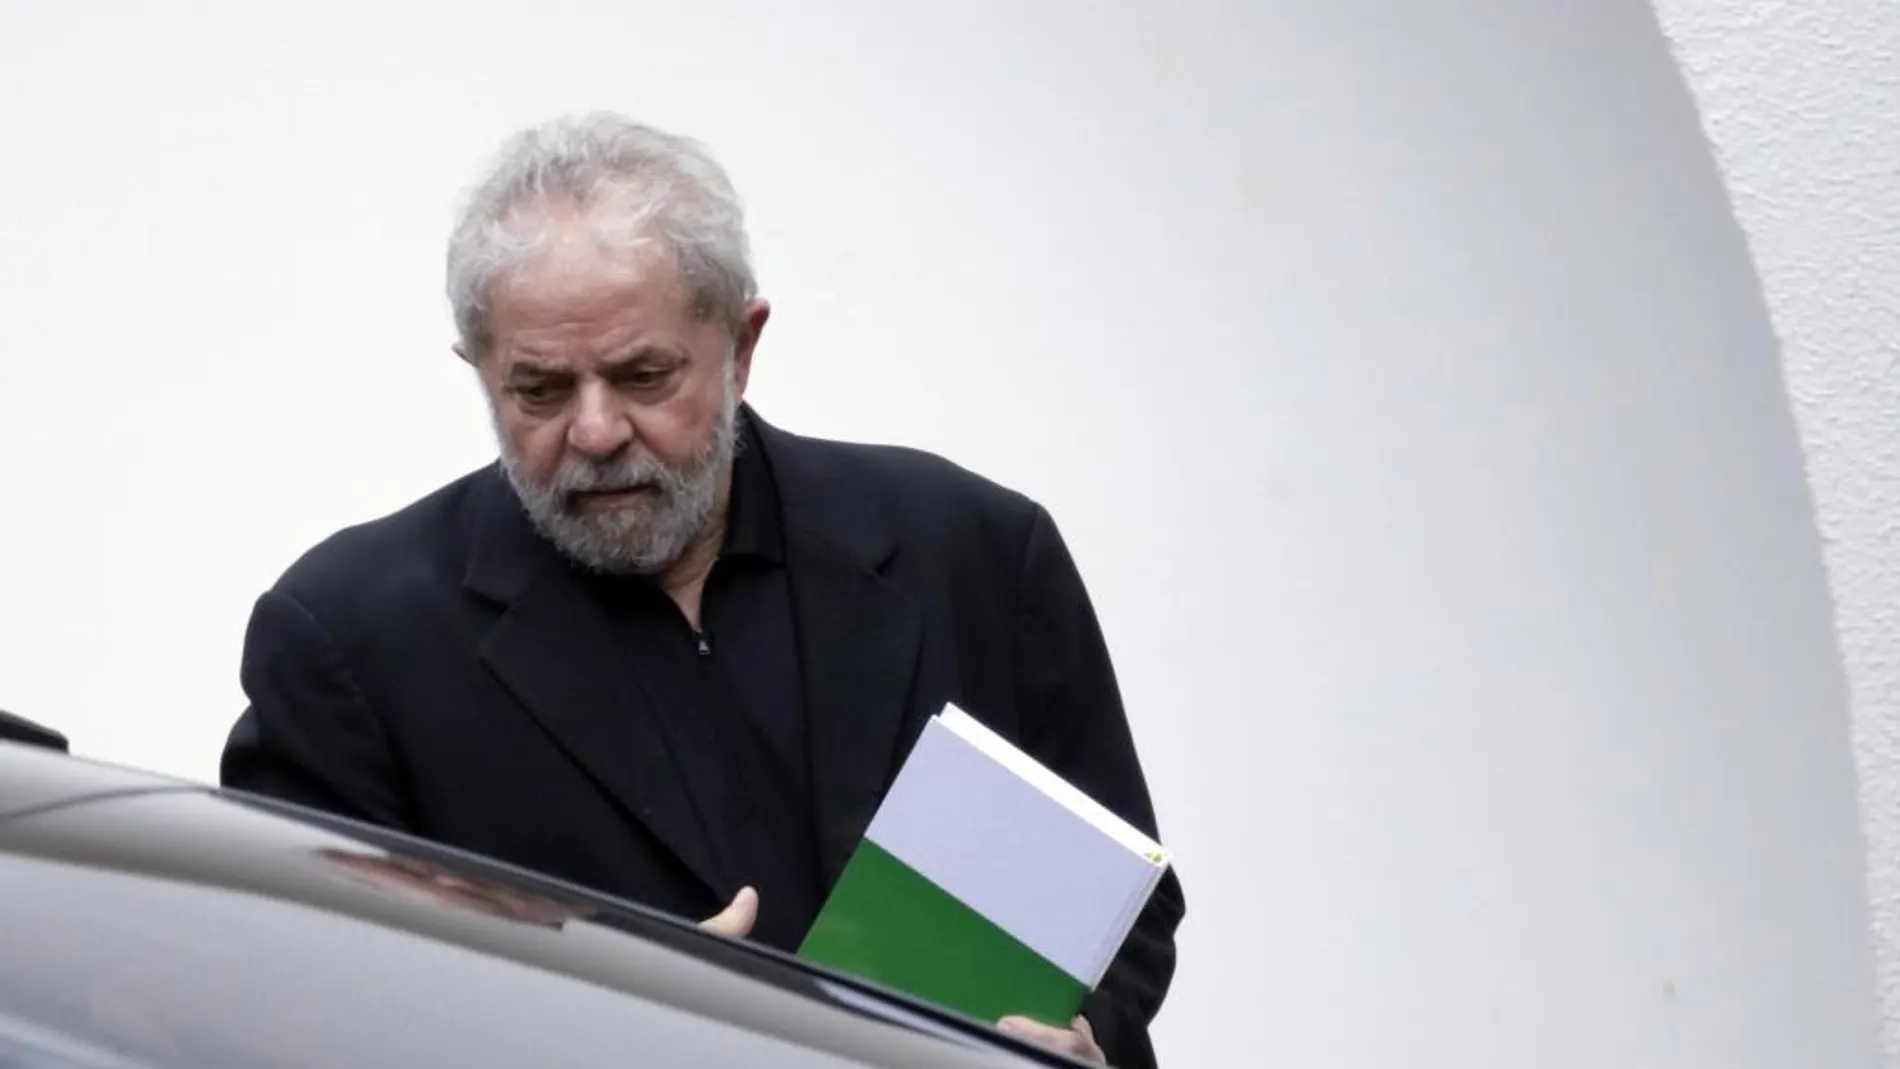 El expresidente brasileño Luiz Inácio Lula da Silva sale de un desayuno con senadores de la base del Gobierno de la presidenta Dilma Rousseff, el miércoles 9 de marzo de 2016